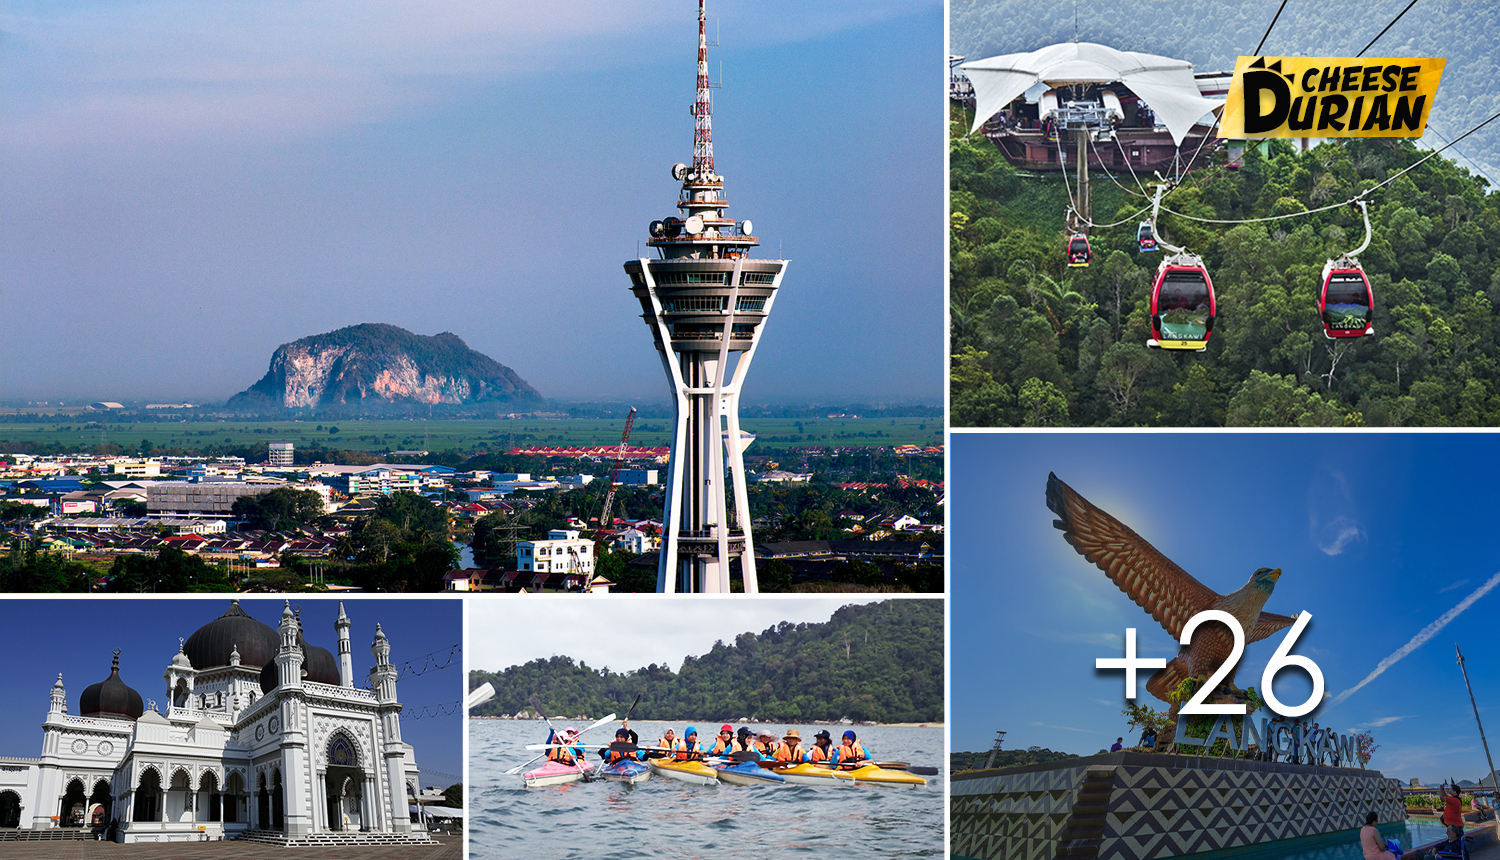 Tempat Menarik Di Kedah Yang Wajib Kita Jejaki. No 9 Paling Ramai Yang